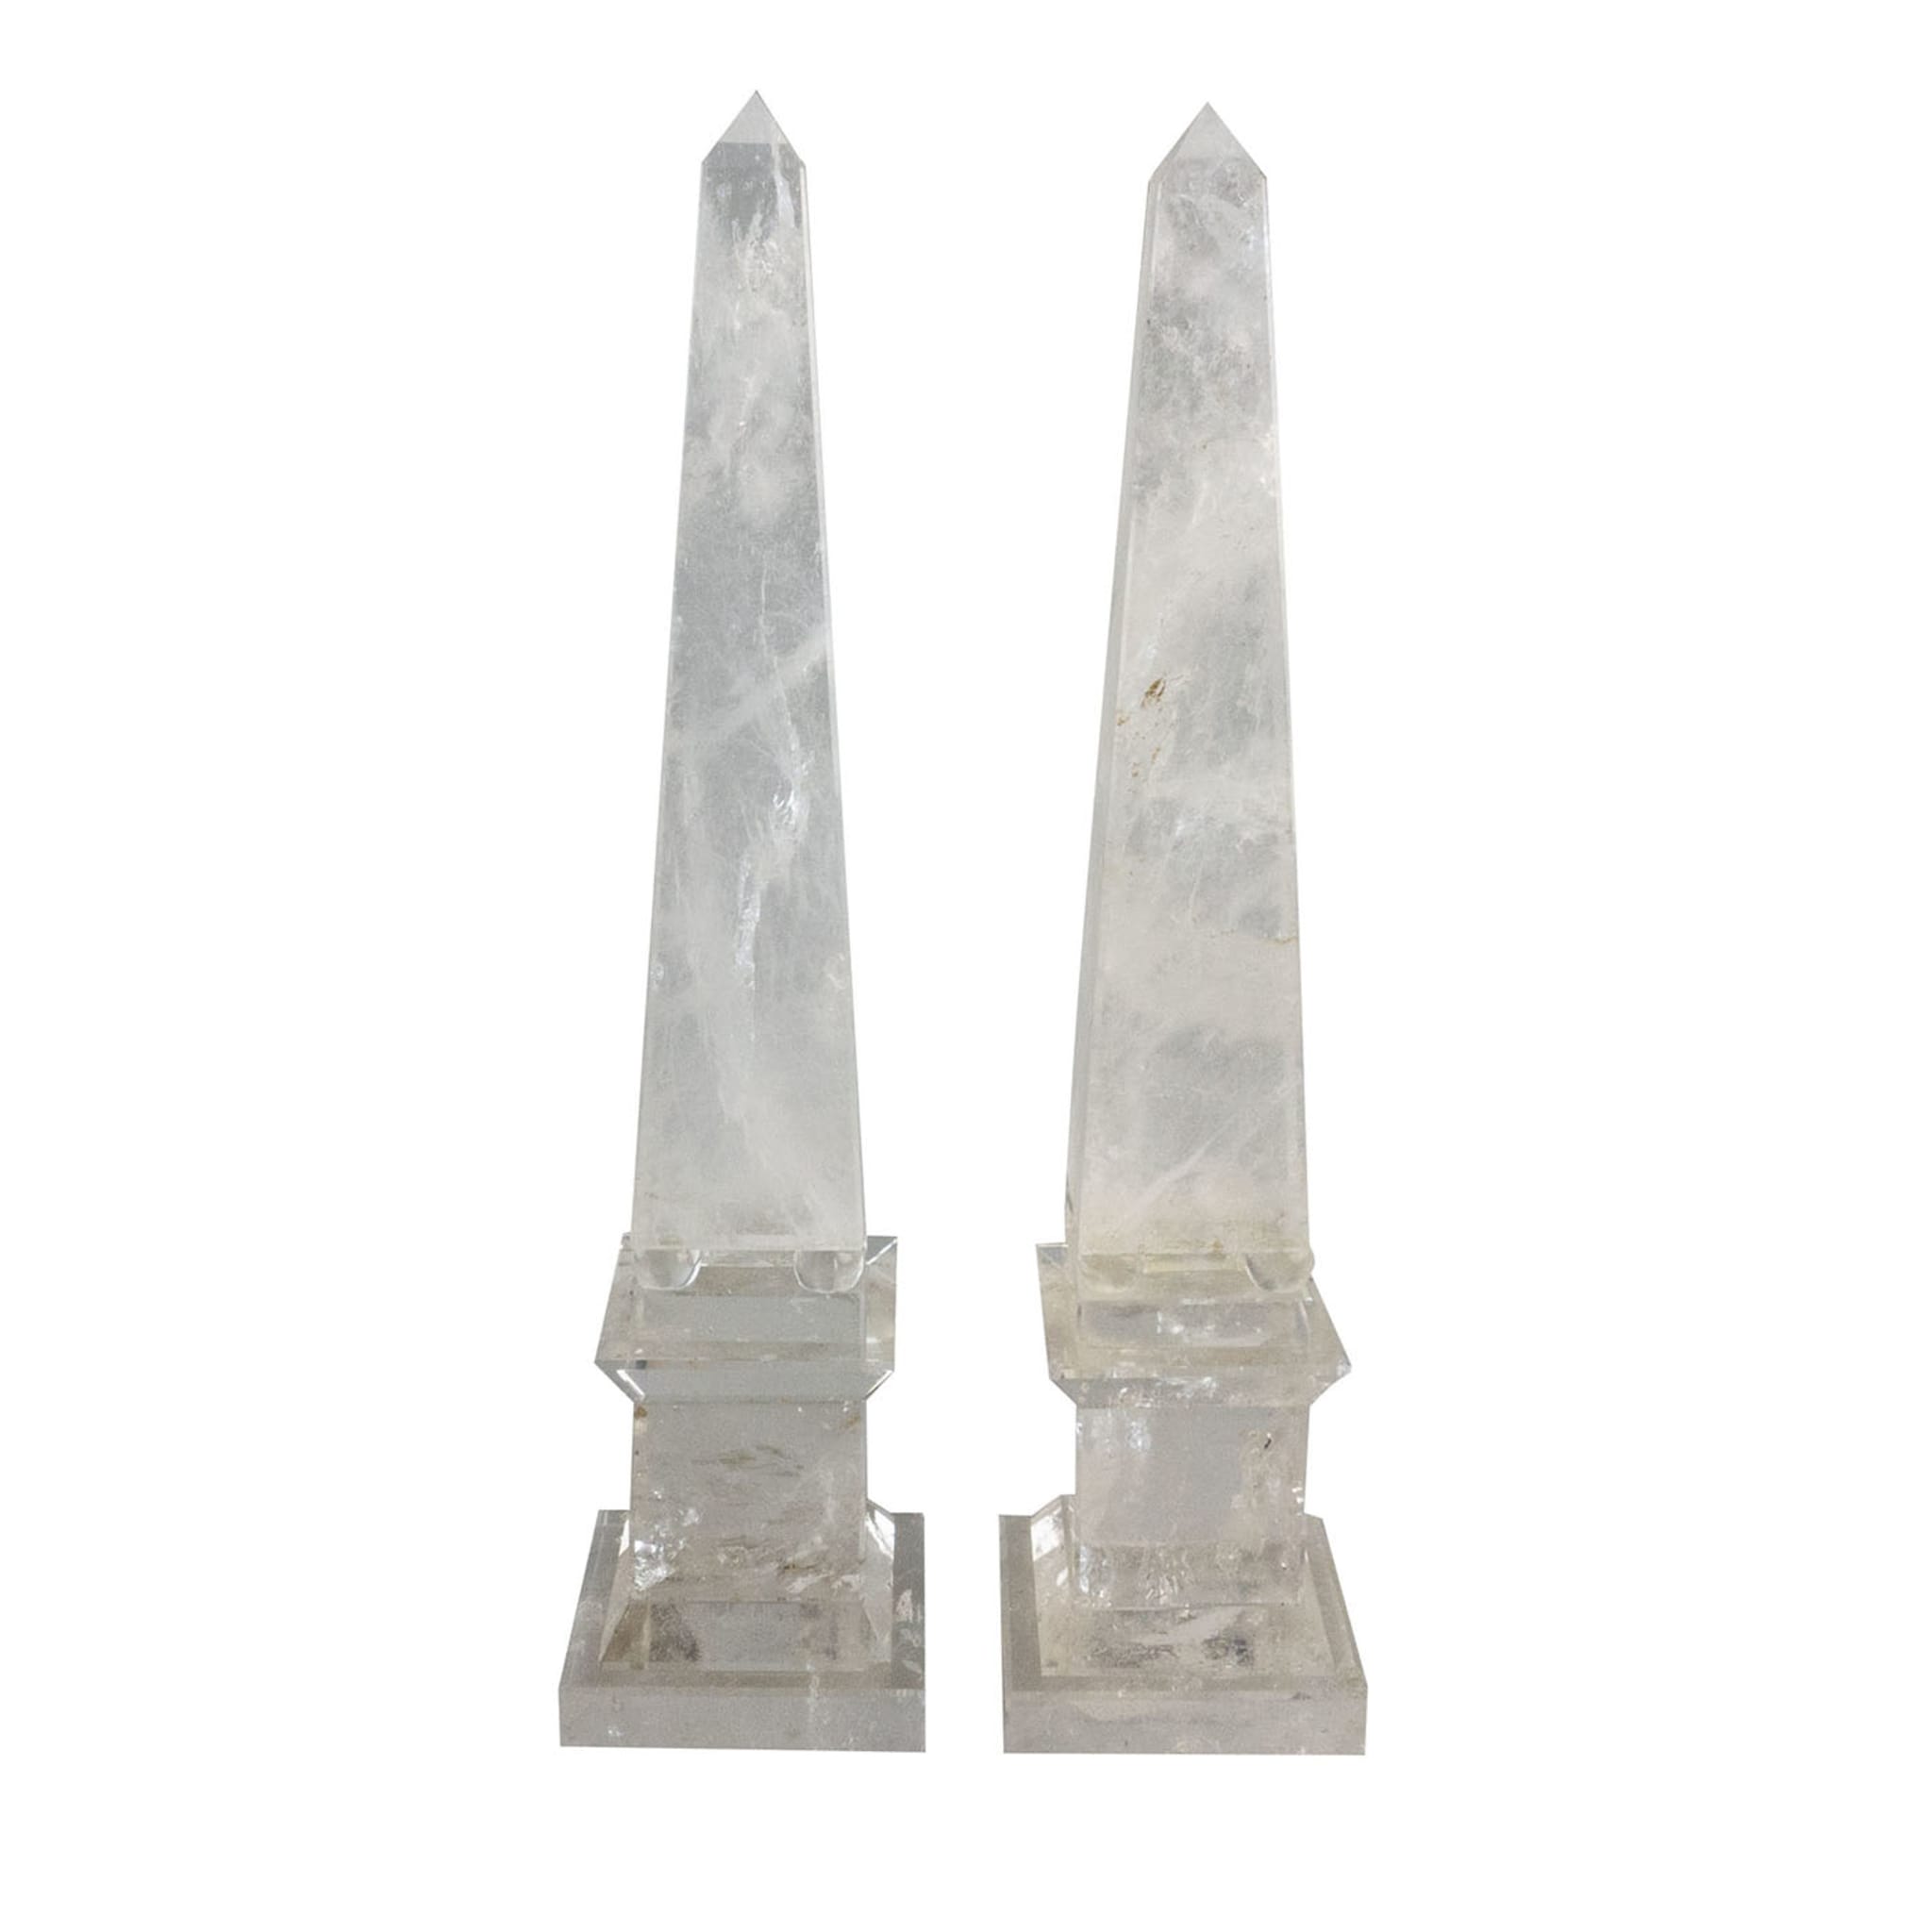 Pair of Hyaline Quartz Obelisks - Main view